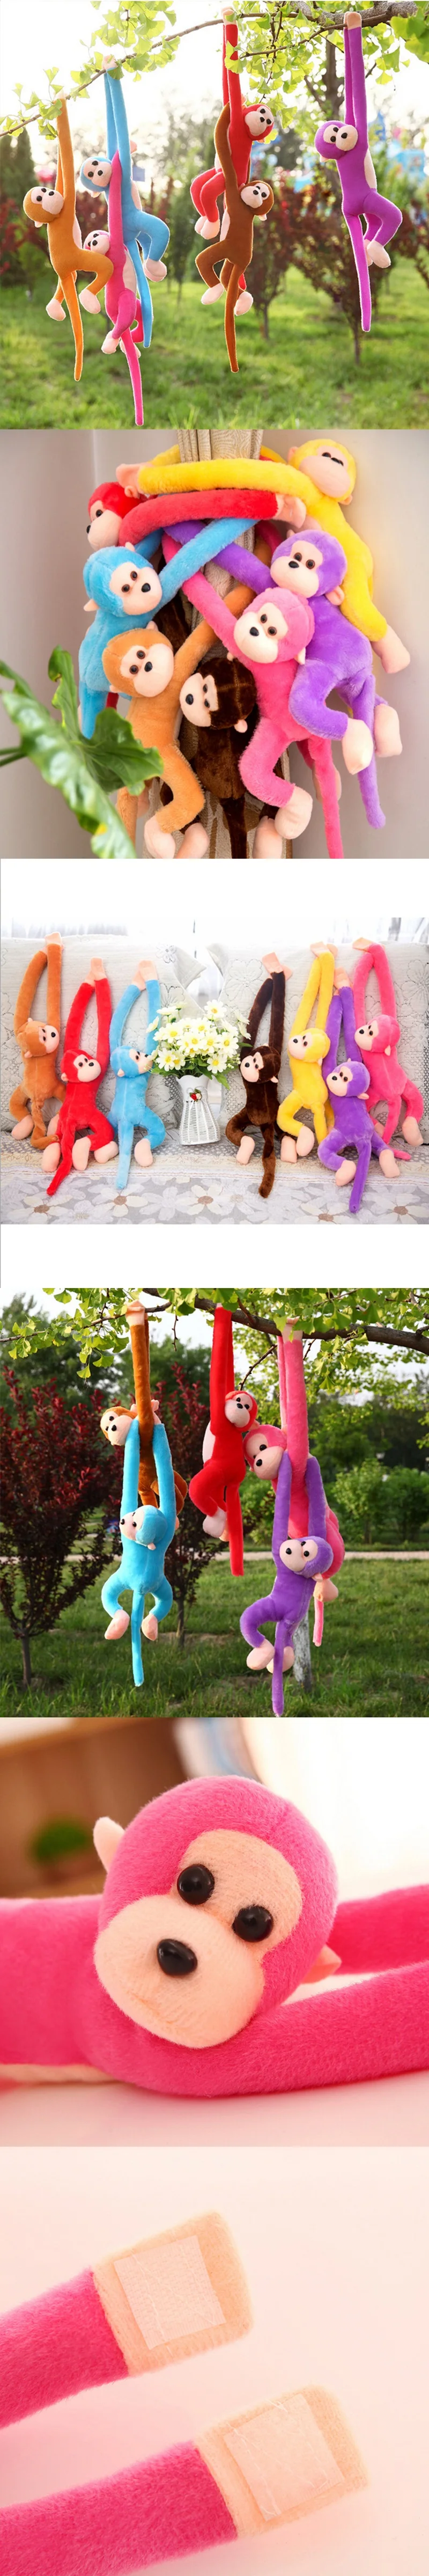 60 см Обезьяна с длинными руками от руки до хвоста разноцветные плюшевые игрушки обезьяна шторы обезьяна чучело кукла 5 цветов